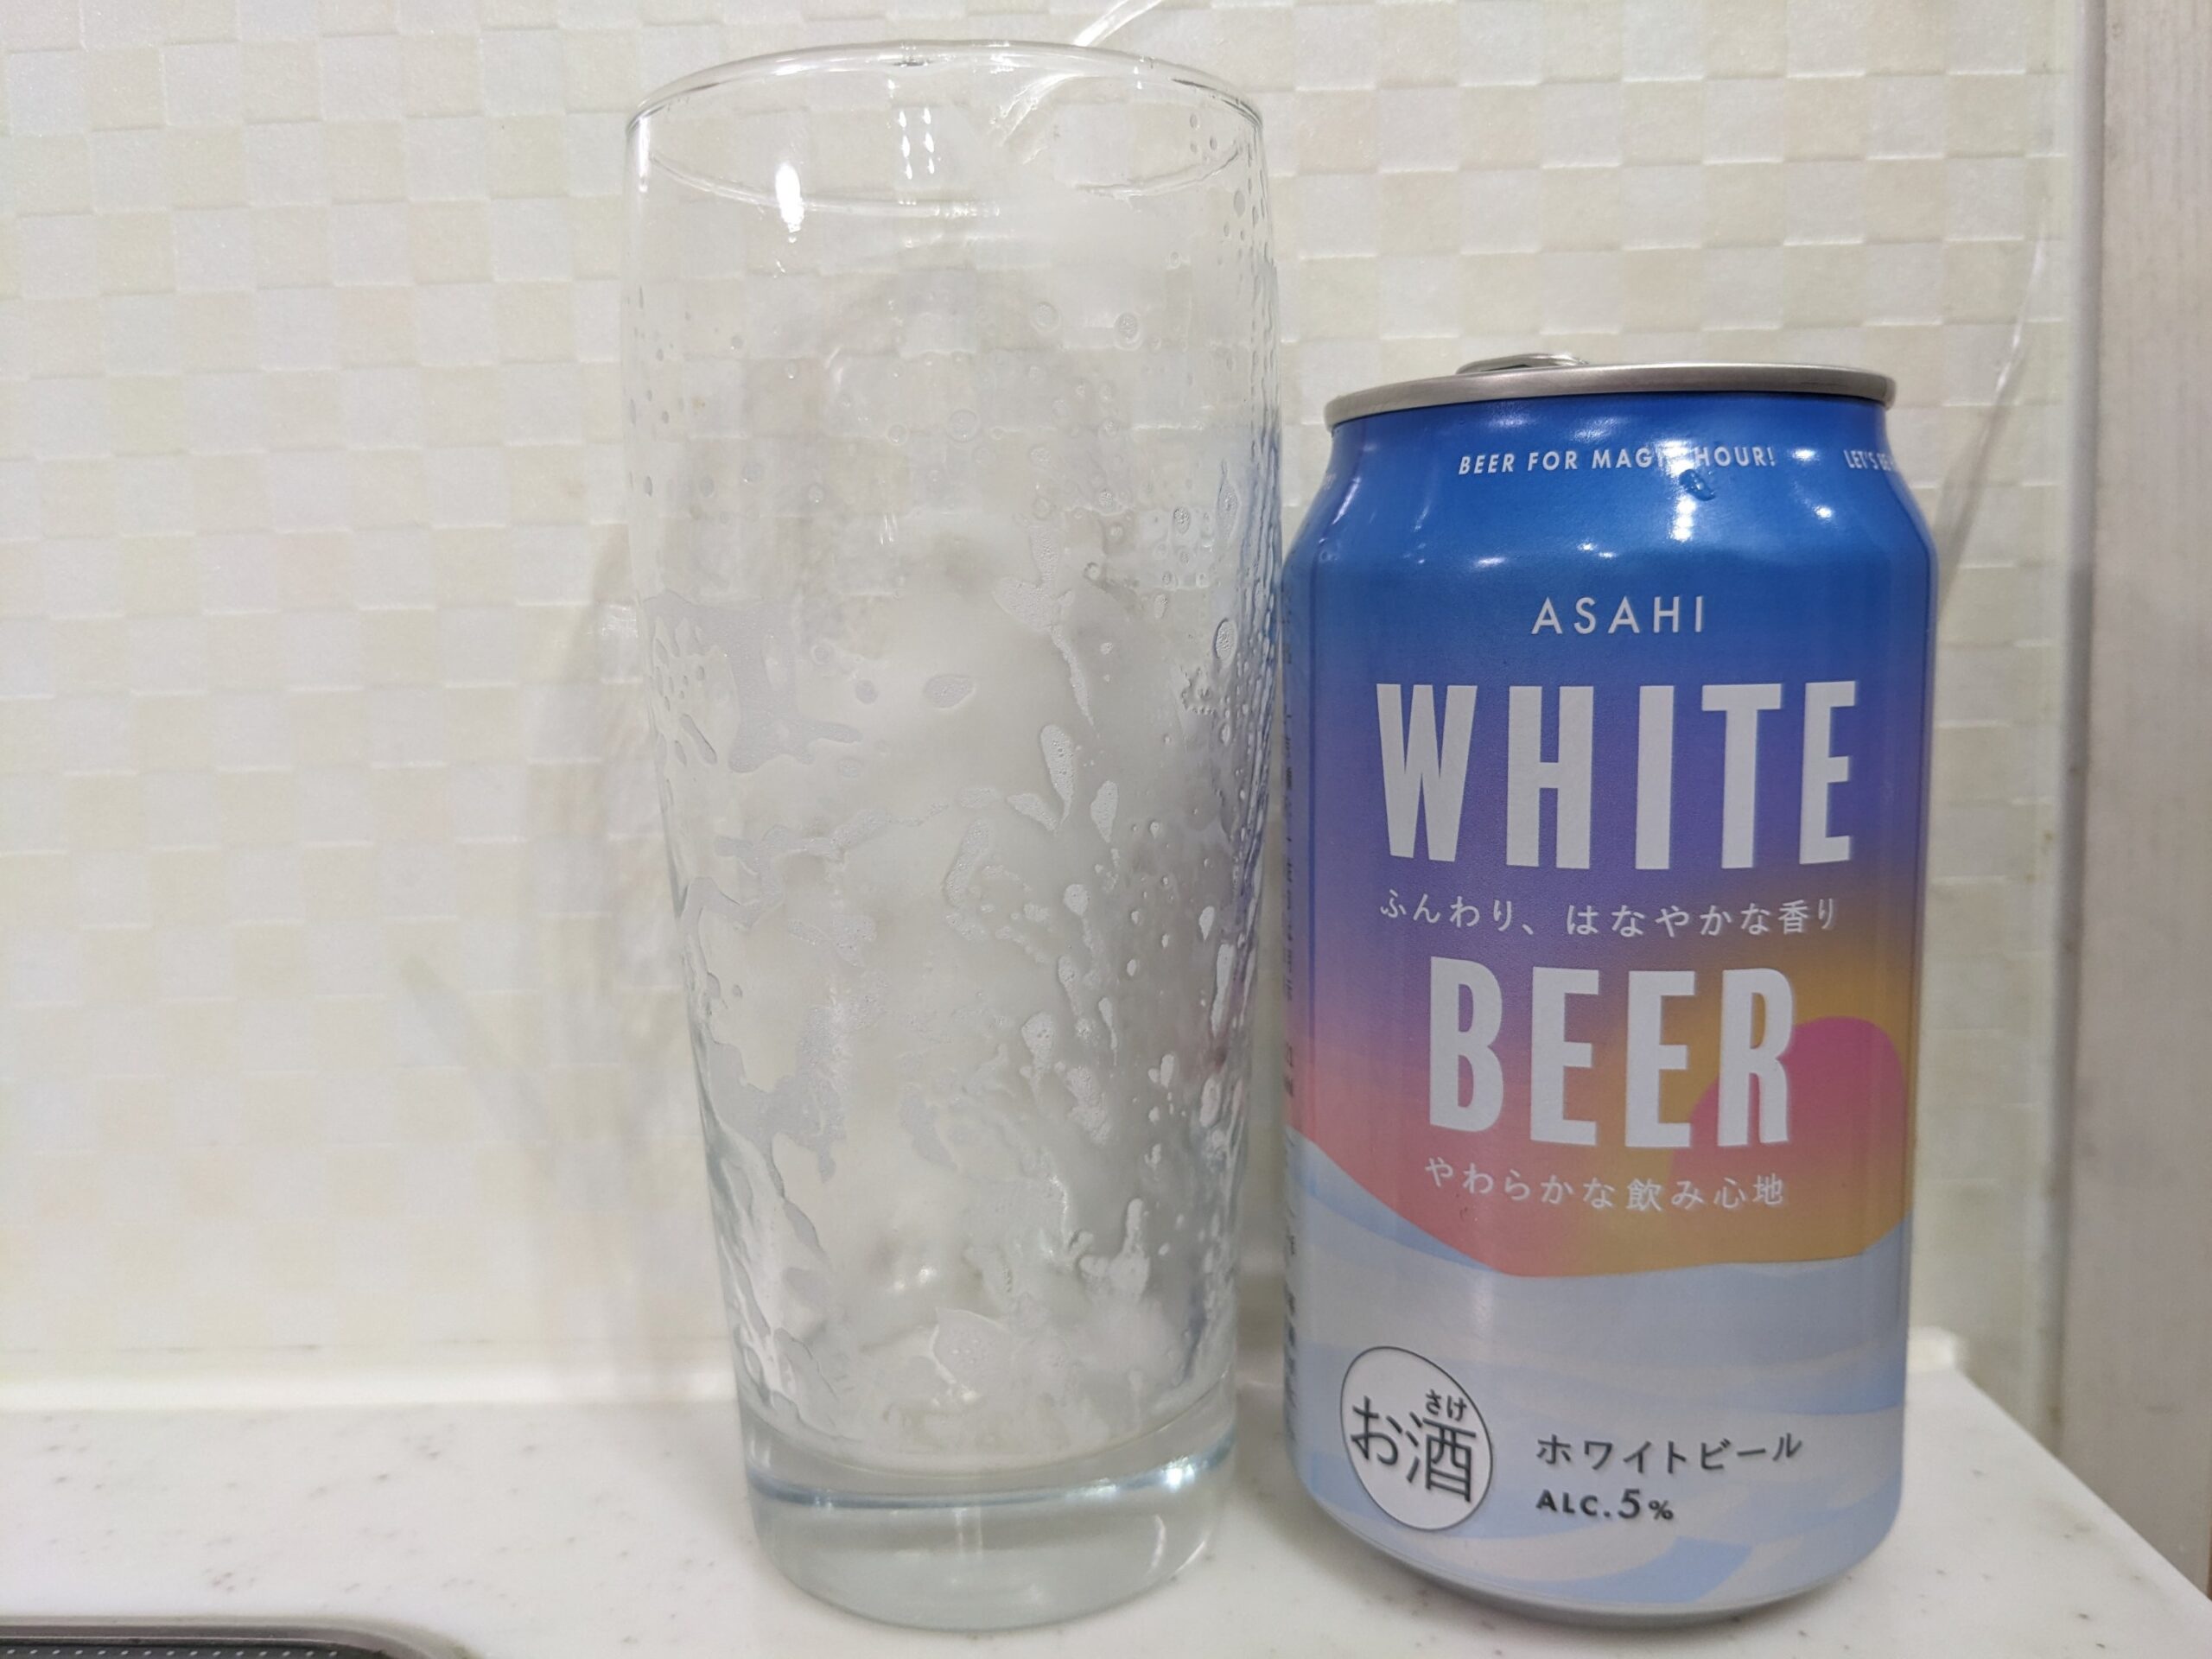 「アサヒホワイトビール（ASAHI WHITE BEER） 」を飲み終えたグラスとその空き缶